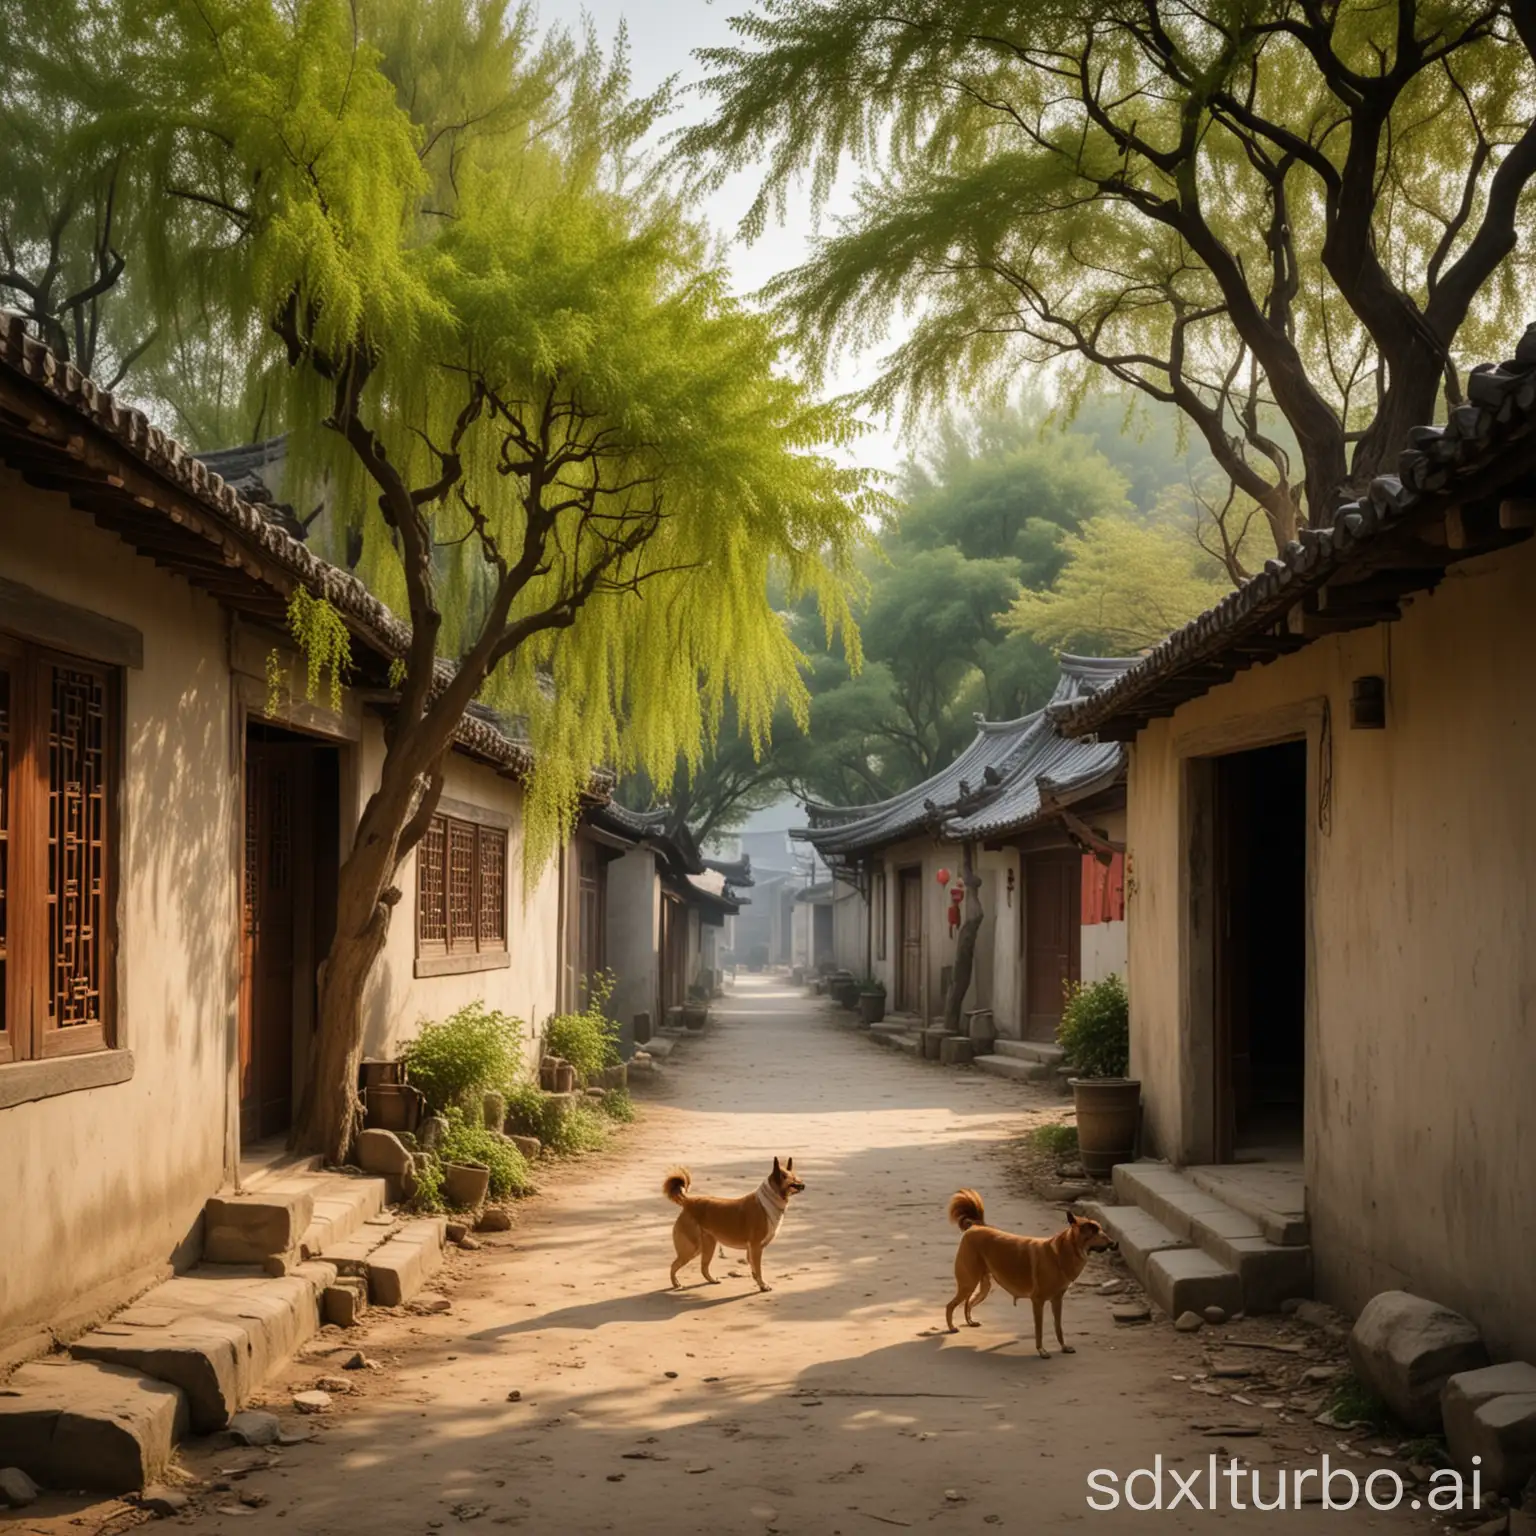 狗吠深巷中，鸡鸣桑树颠的中国晋代时期的田园景象，房子是茅草屋的巷子，整体意境是宁静祥和